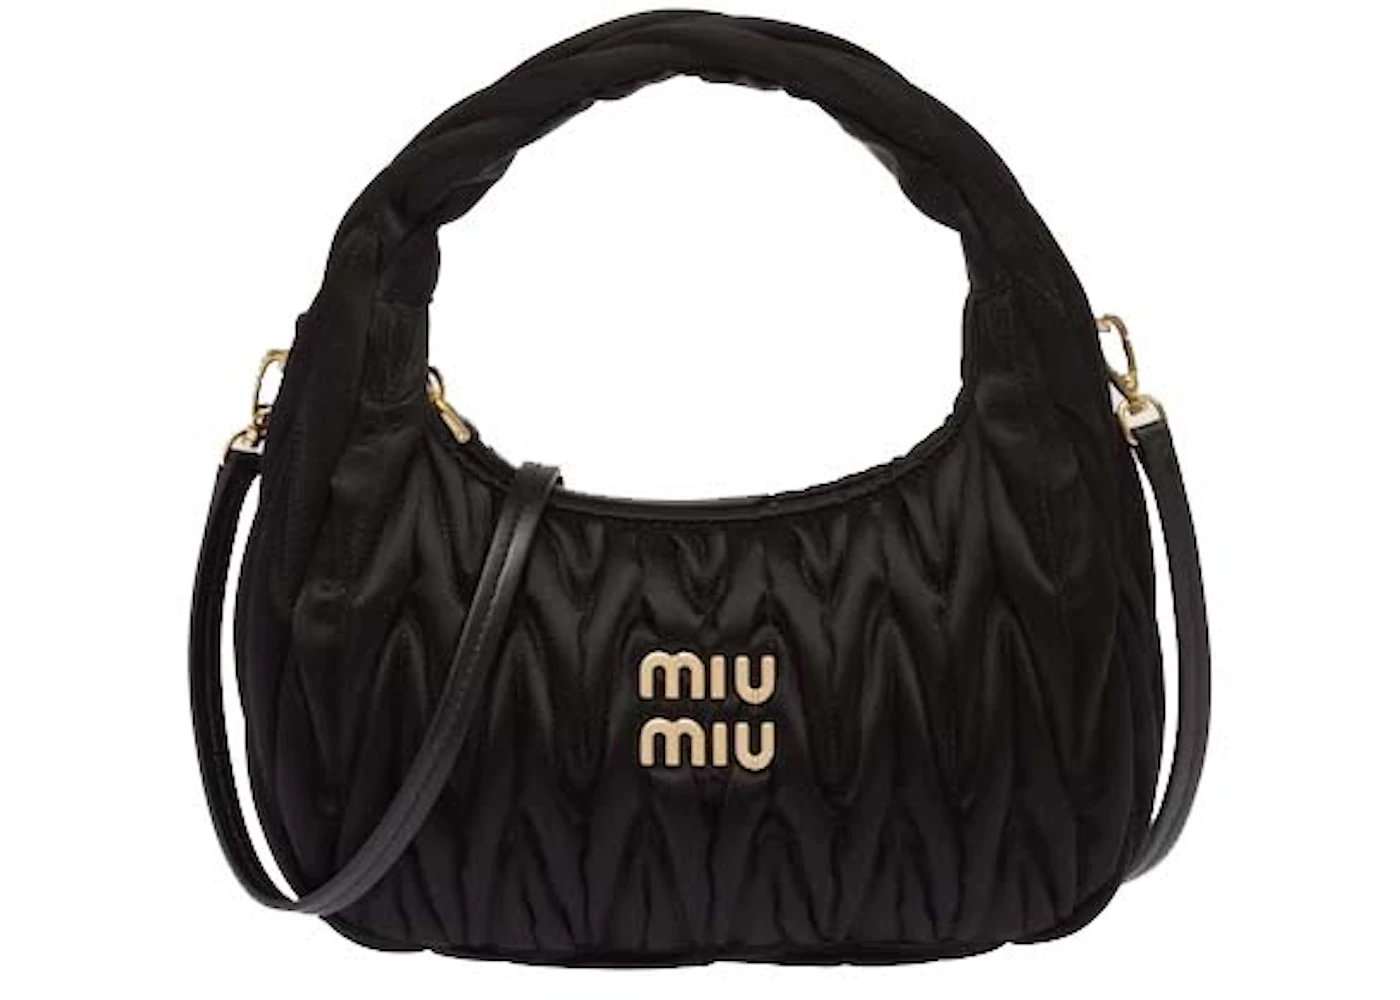 Miu Miu Wander Matelasse Satin Mini Hobo Bag Black in Fabric with Gold ...